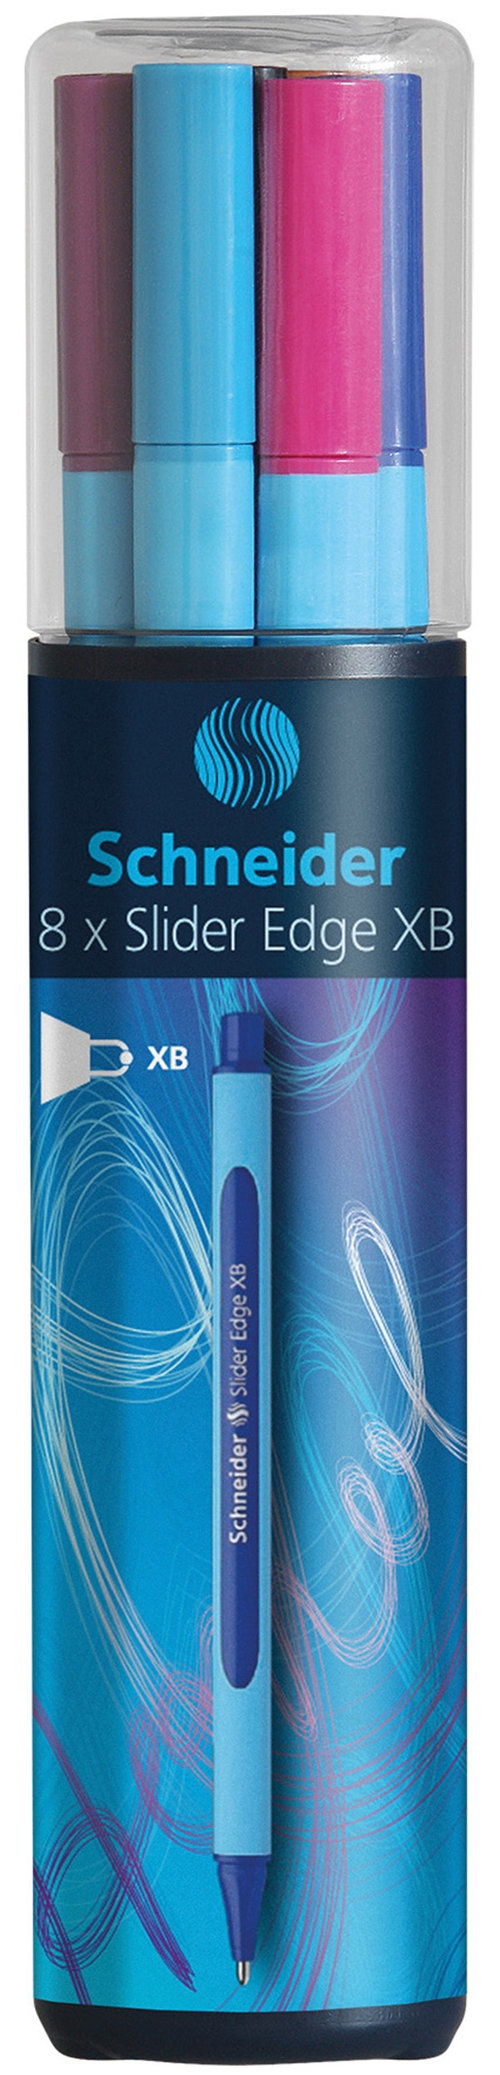 Zestaw długopisów w tubie Schneider Slider Edge, XB, 8 sztuk miks kolorów